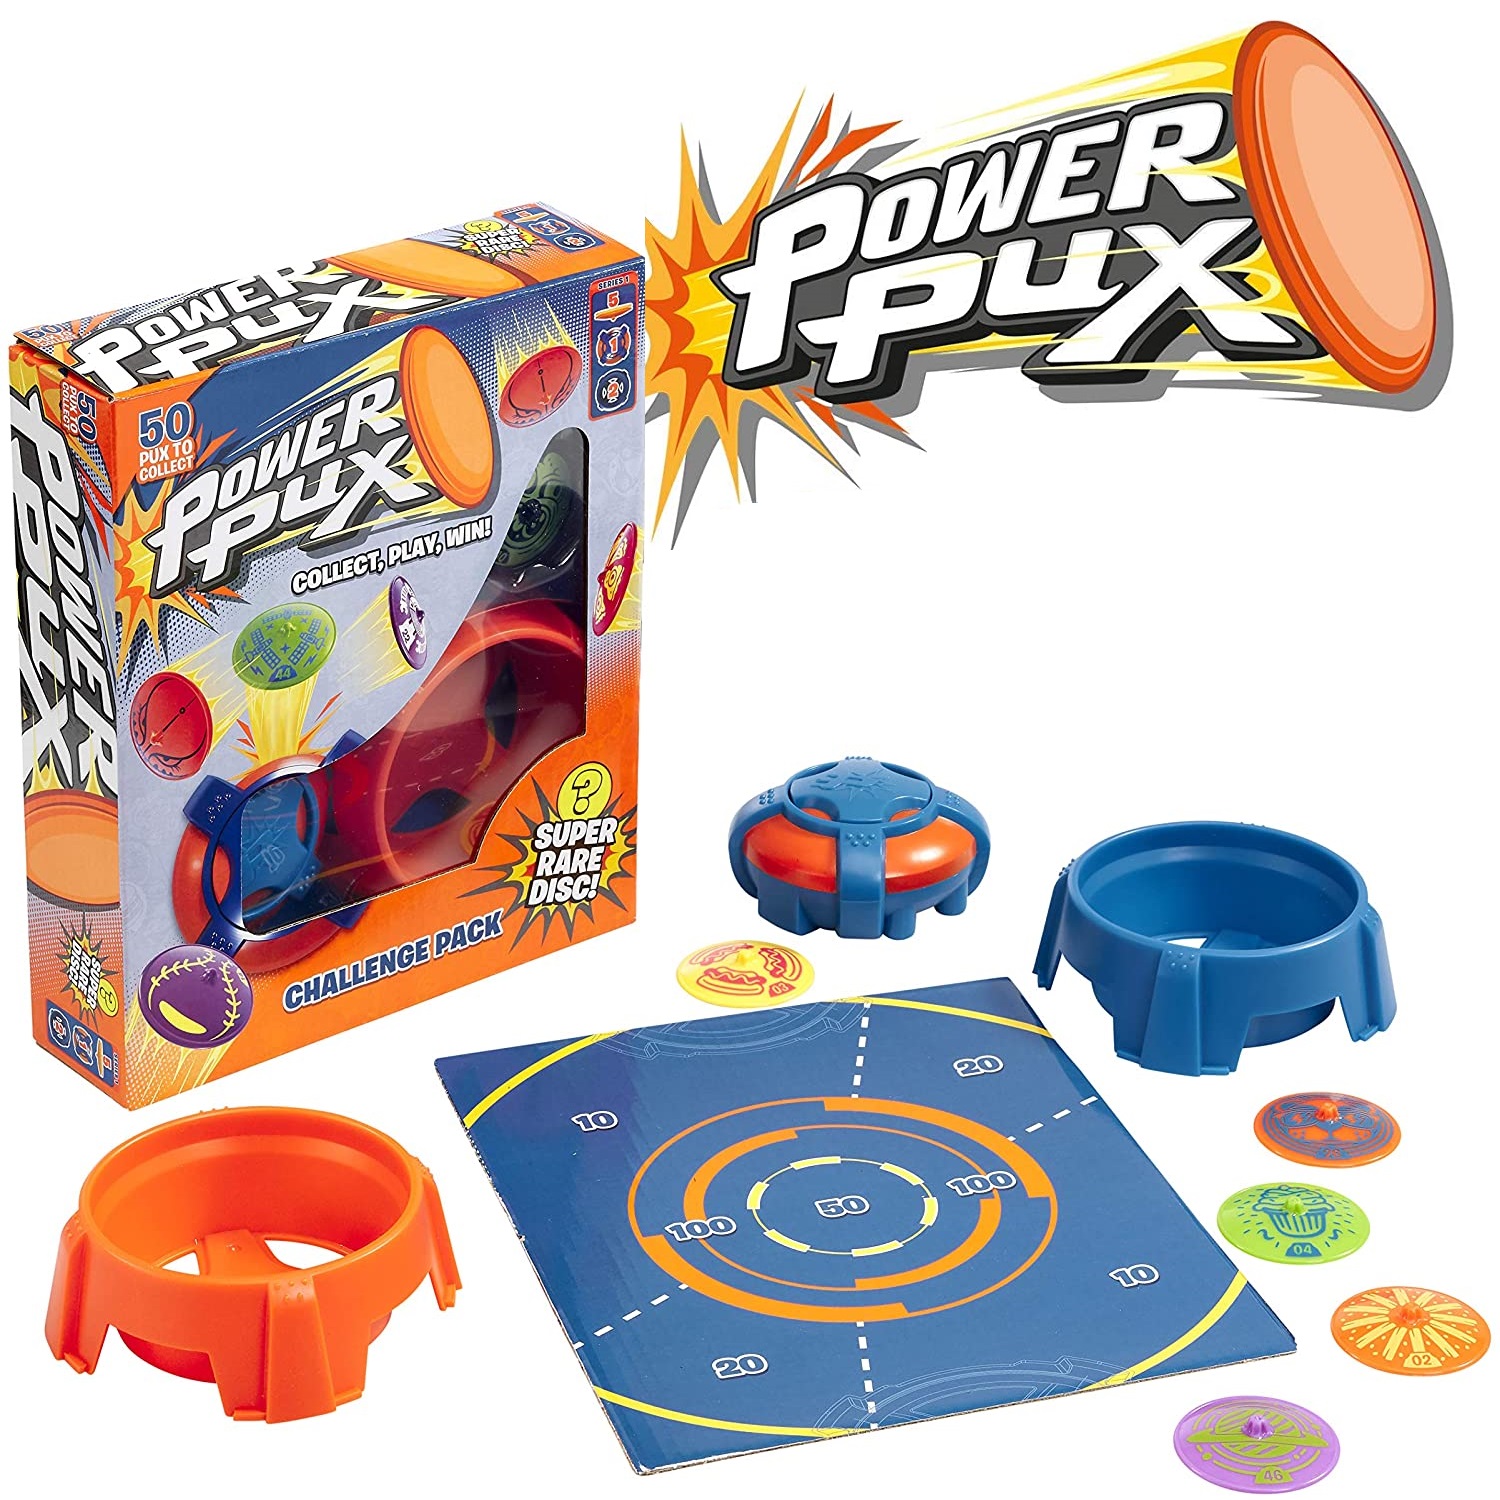 Goliath Power Pux压力弹射飞盘空接儿童玩具眼疾手快益智游戏